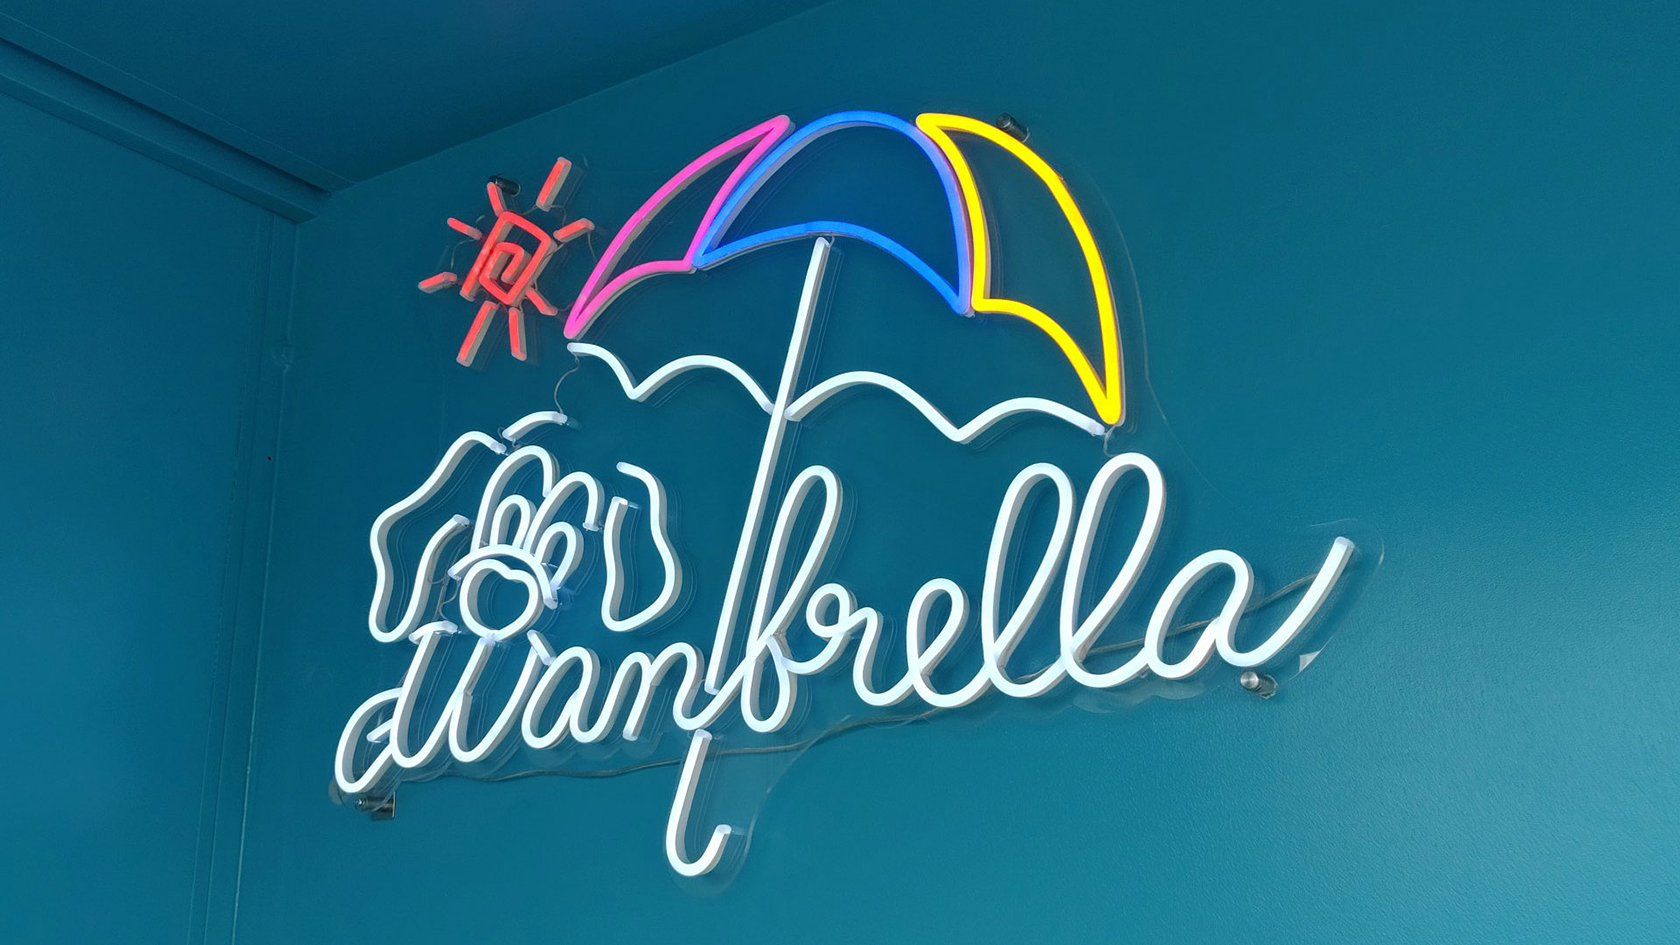 Wanbrella